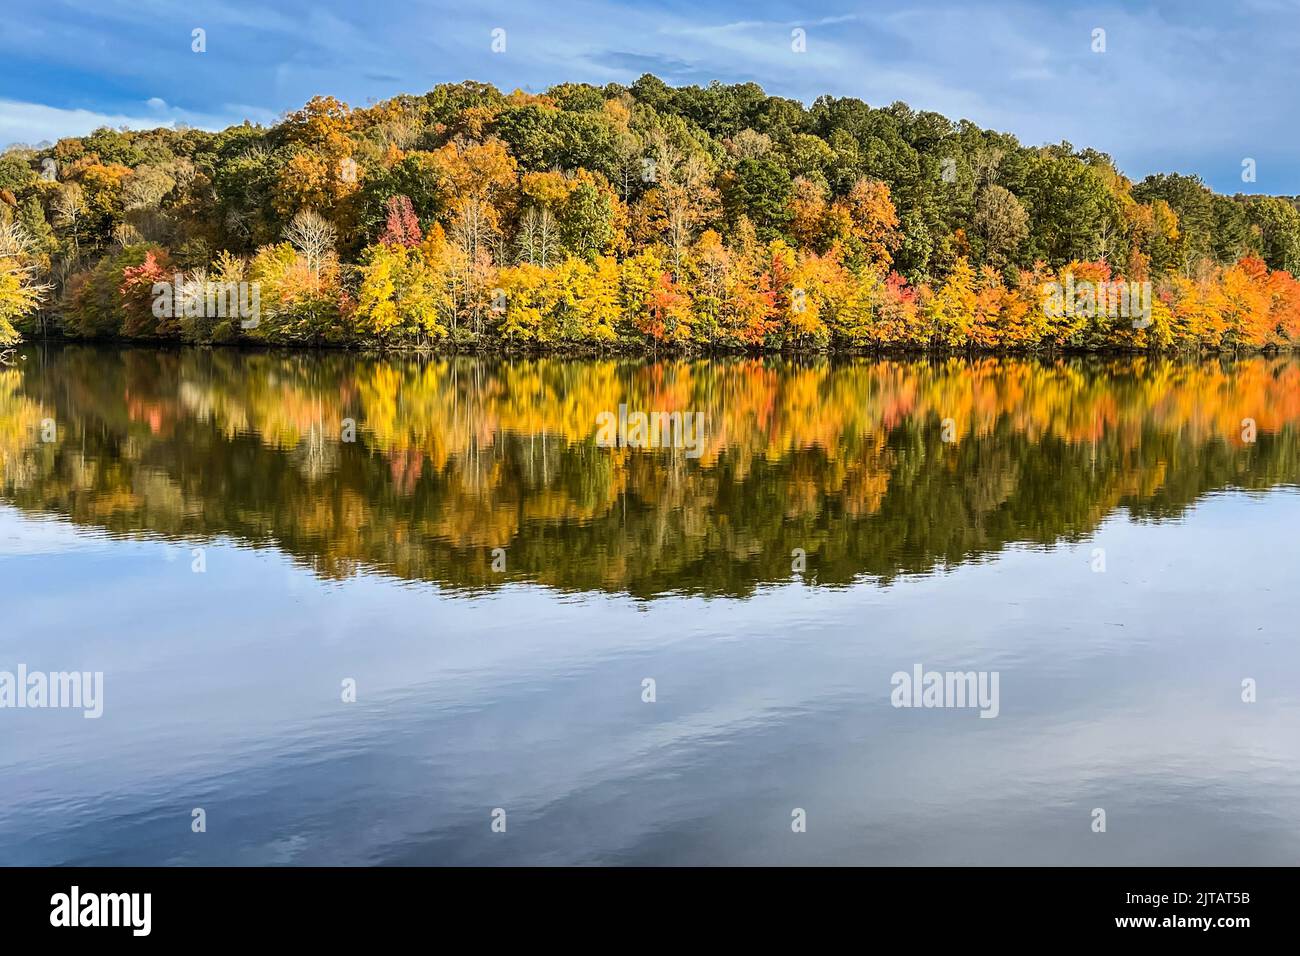 Los brillantes colores del follaje otoñal se reflejan en la superficie del lago North Georgia. Foto de stock